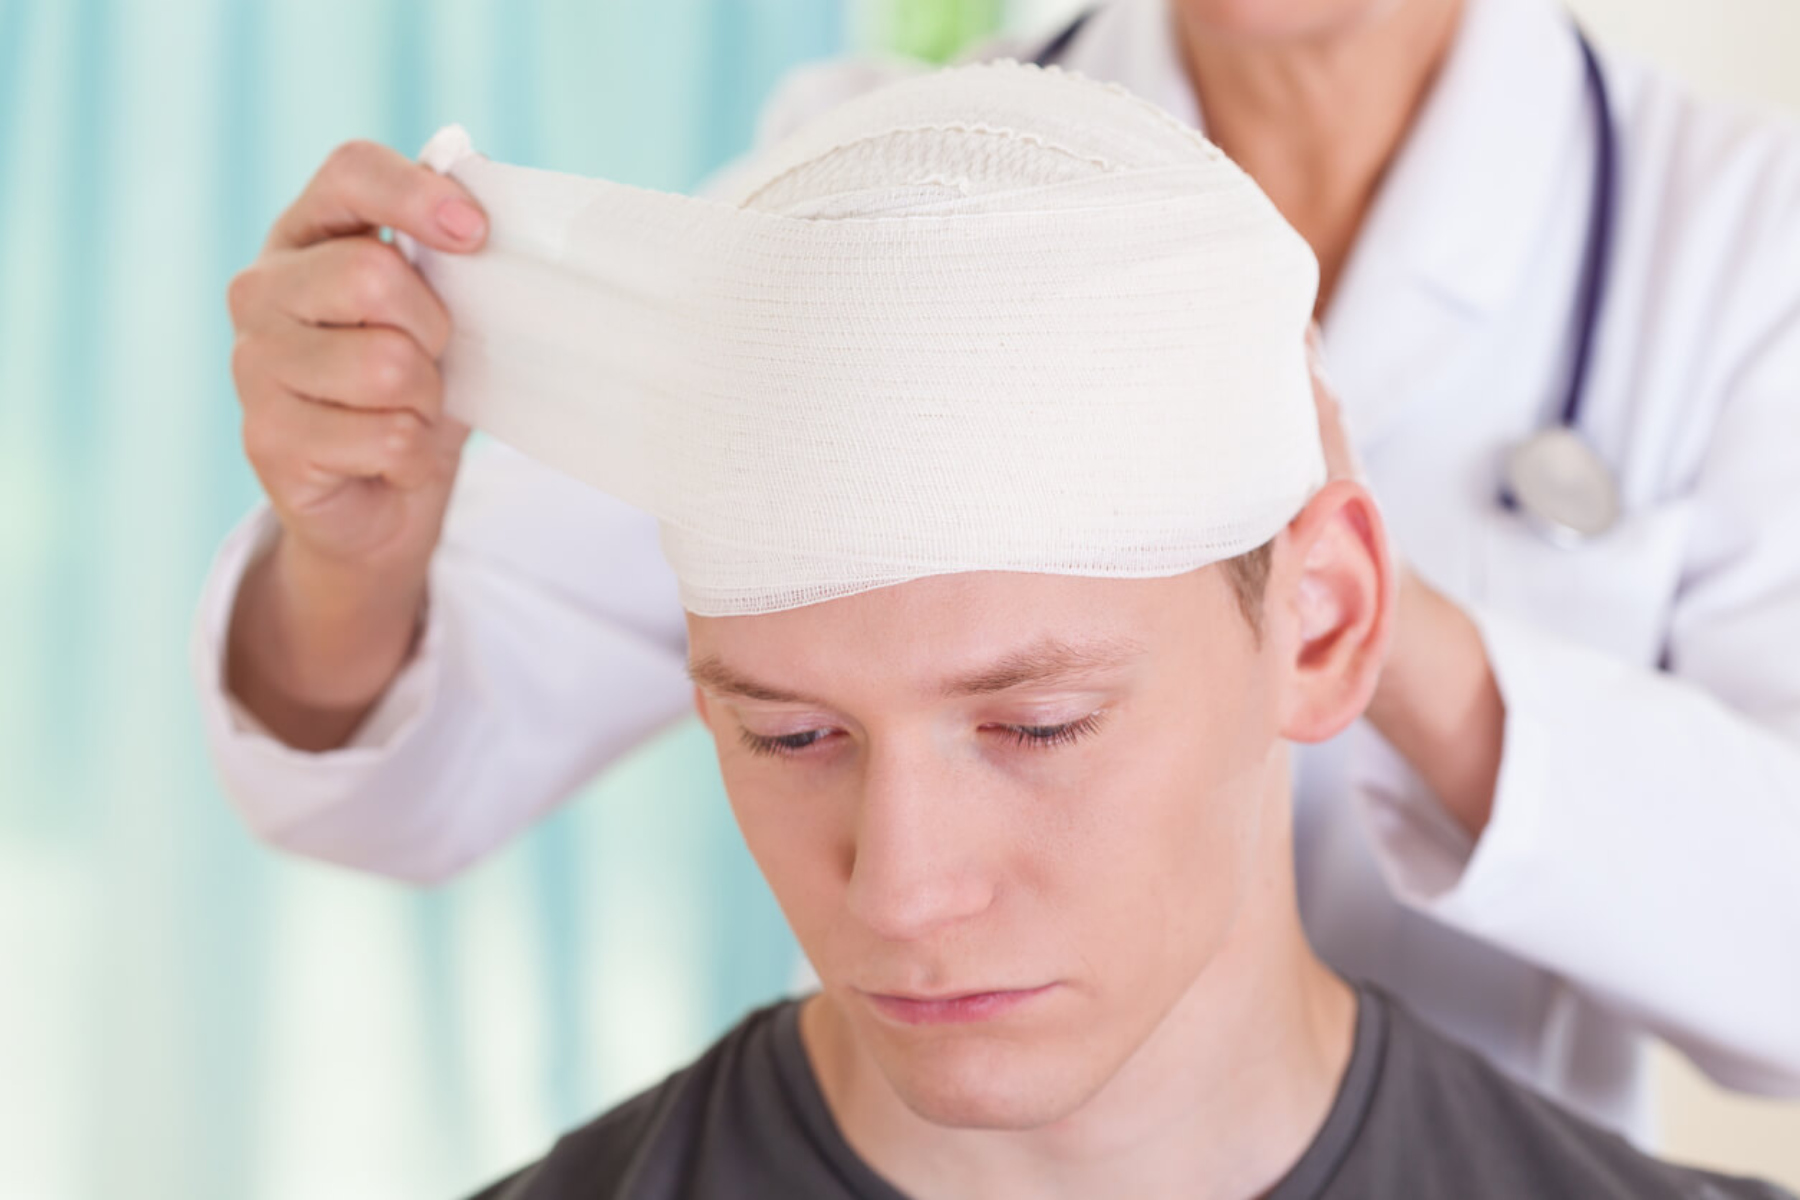 Εγκεφαλική βλάβη: Το τραύμα στο κεφάλι μπορεί να προκαλέσει εγκεφαλική βλάβη στο μέλλον